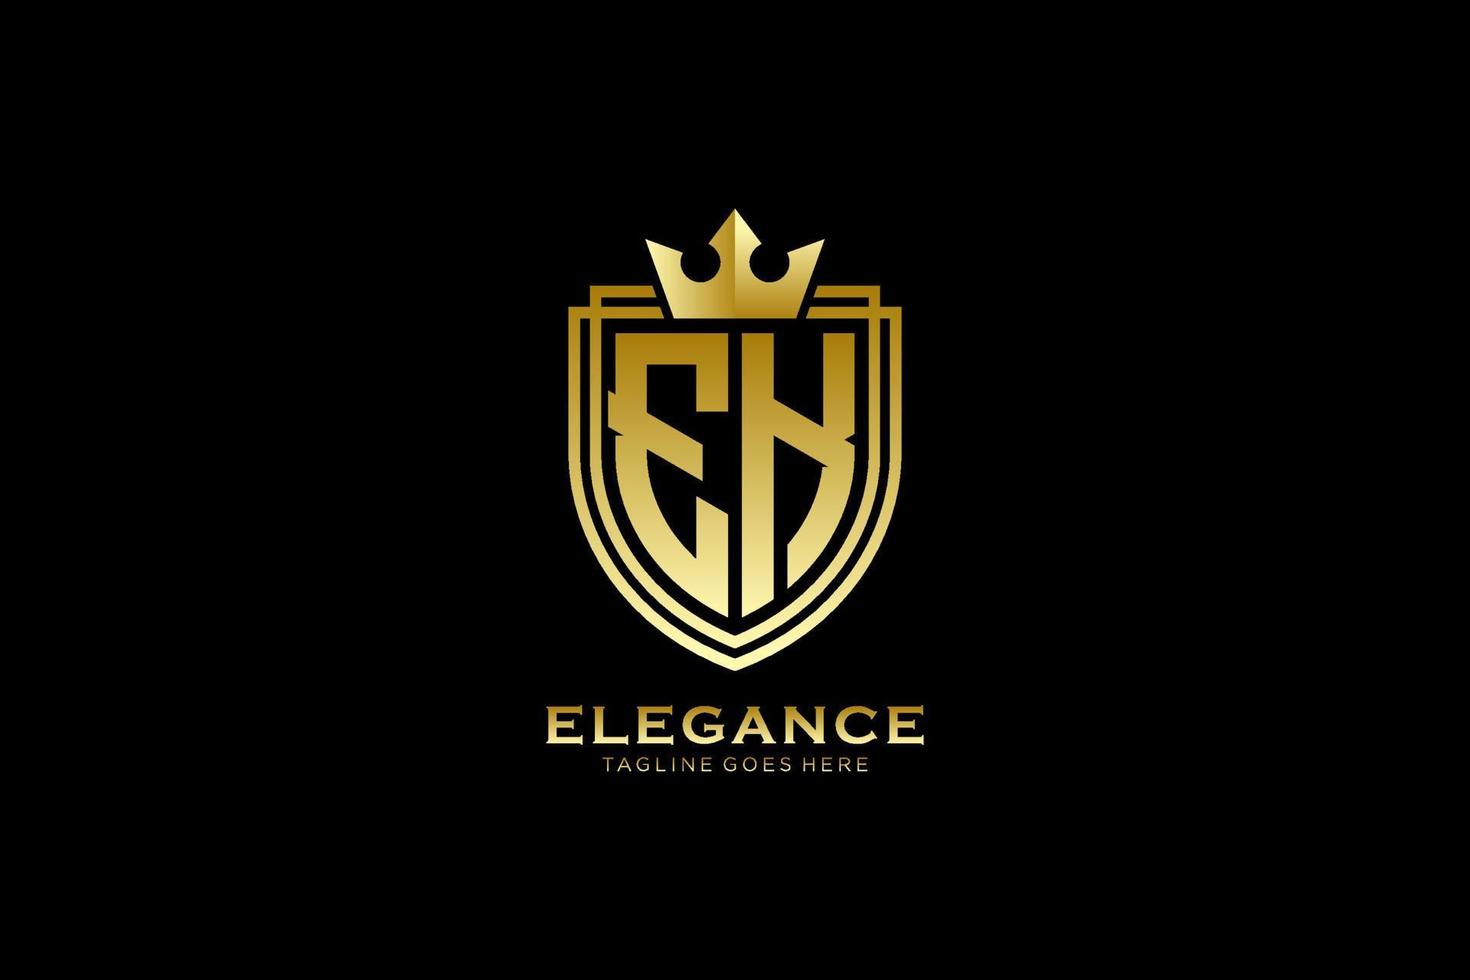 logotipo de monograma de lujo inicial ek elegante o plantilla de placa con pergaminos y corona real - perfecto para proyectos de marca de lujo vector